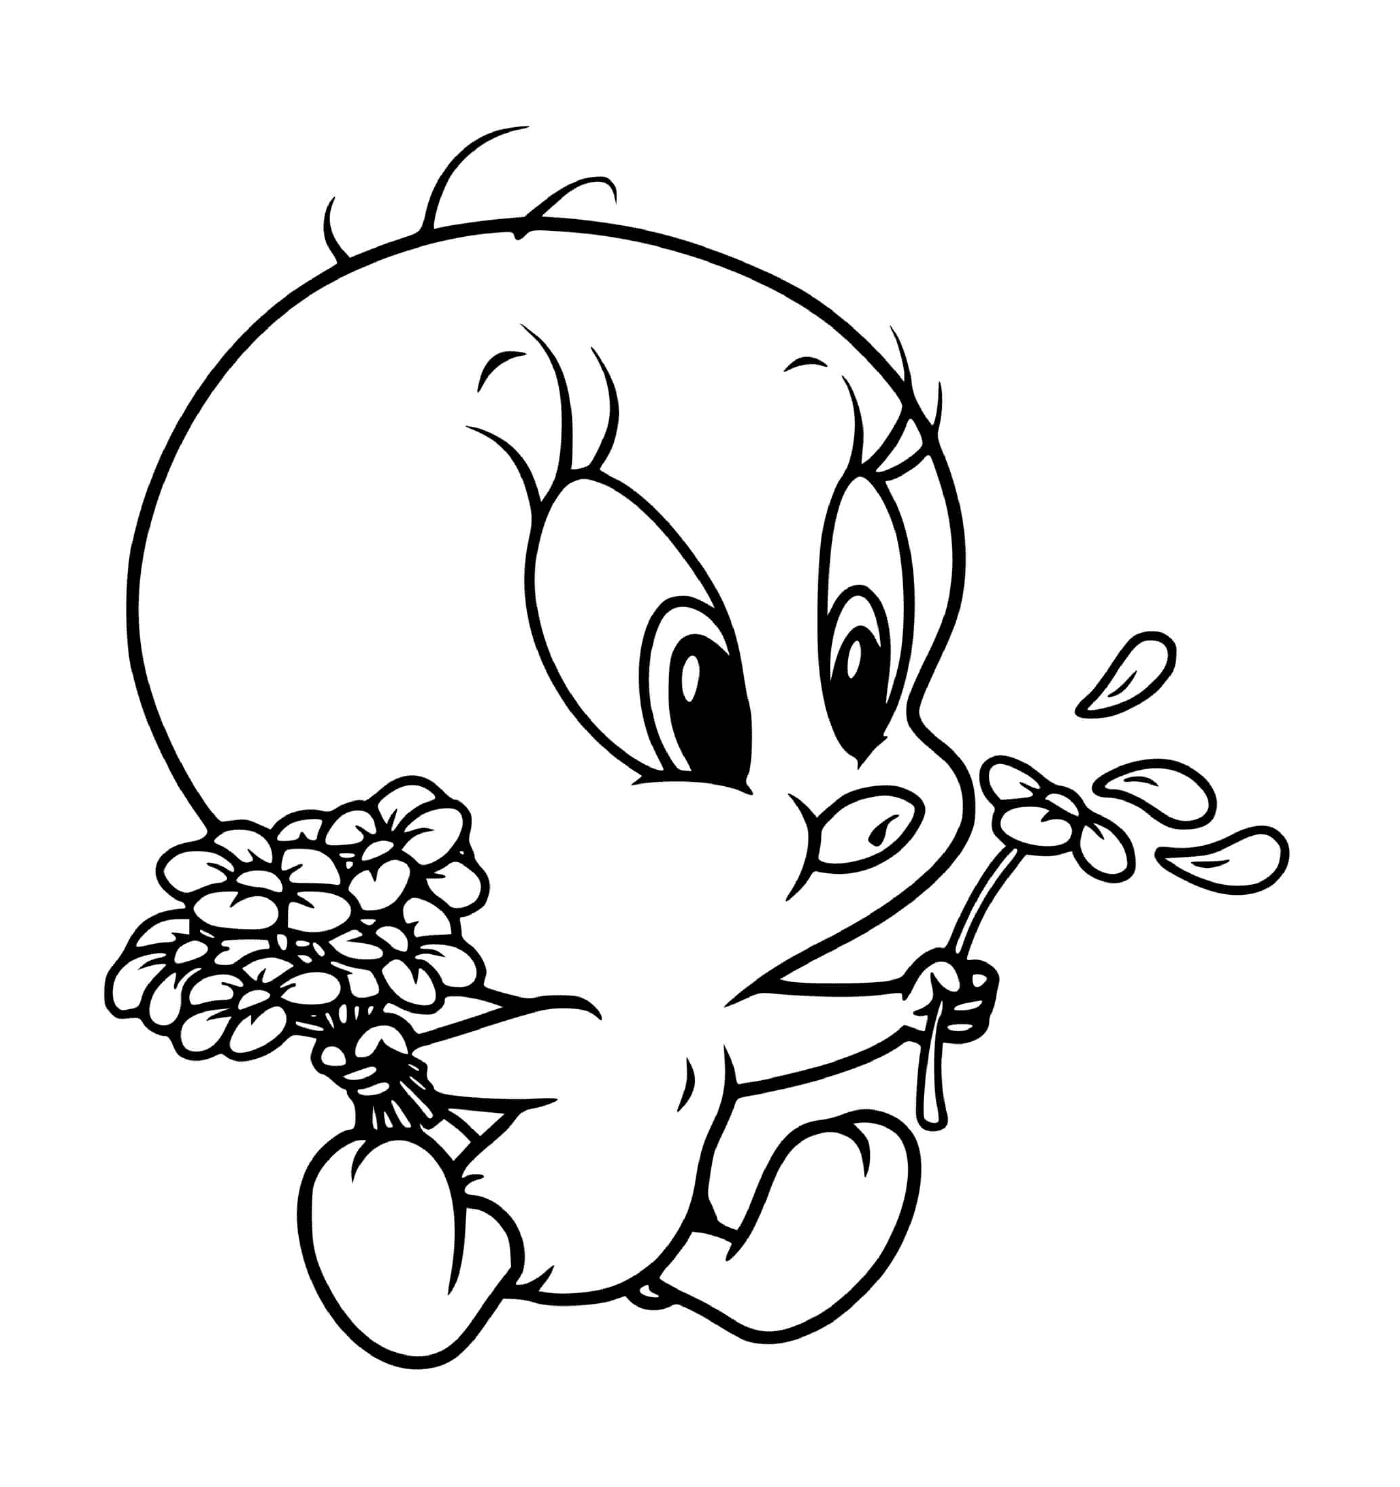  Малыш Тити дует цветы 